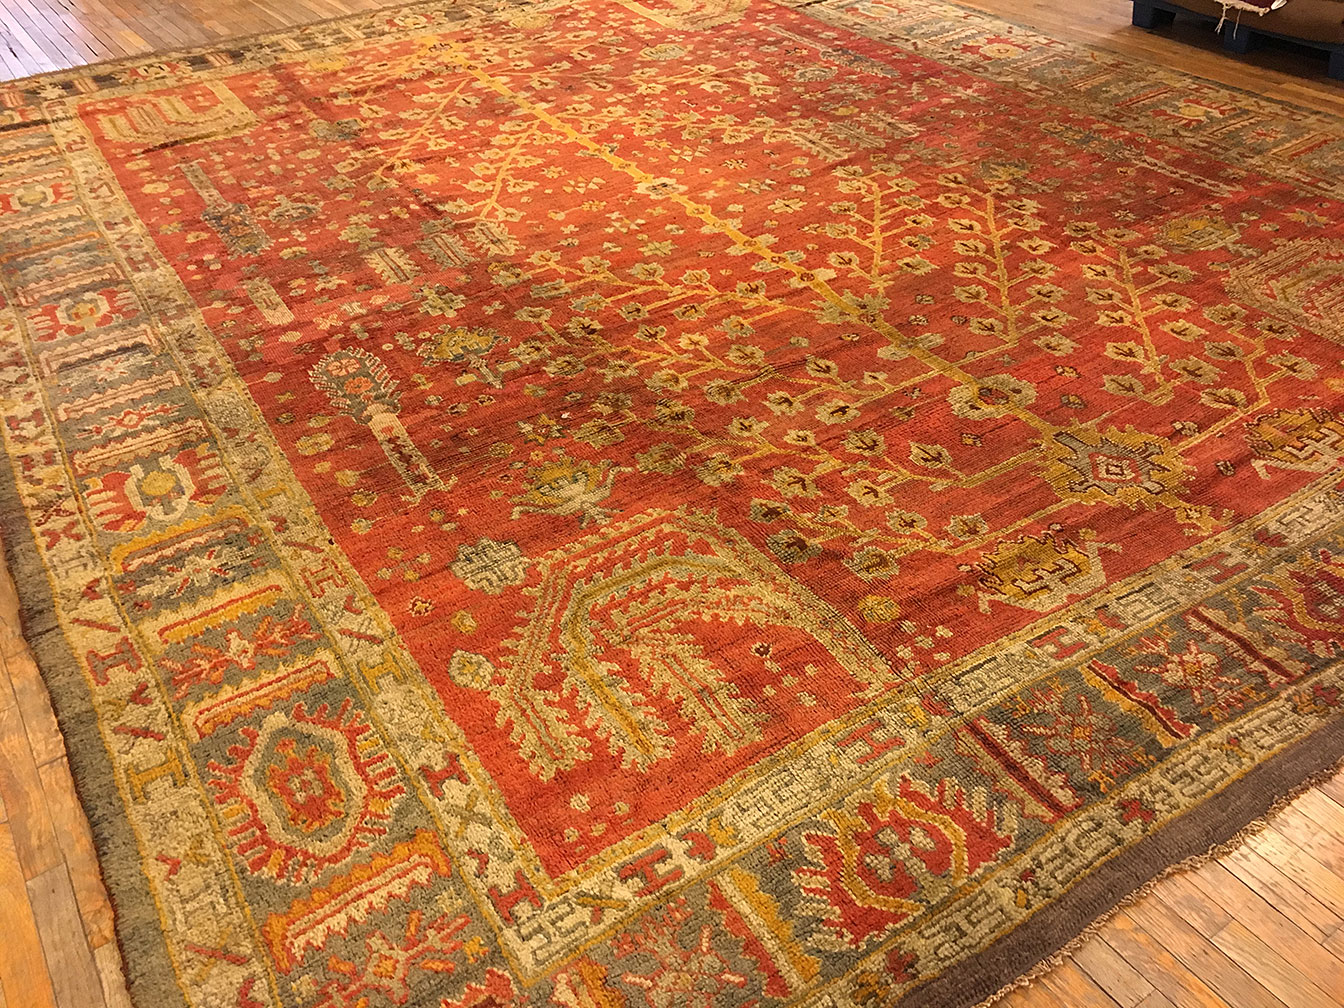 Antique oushak Carpet - # 51433